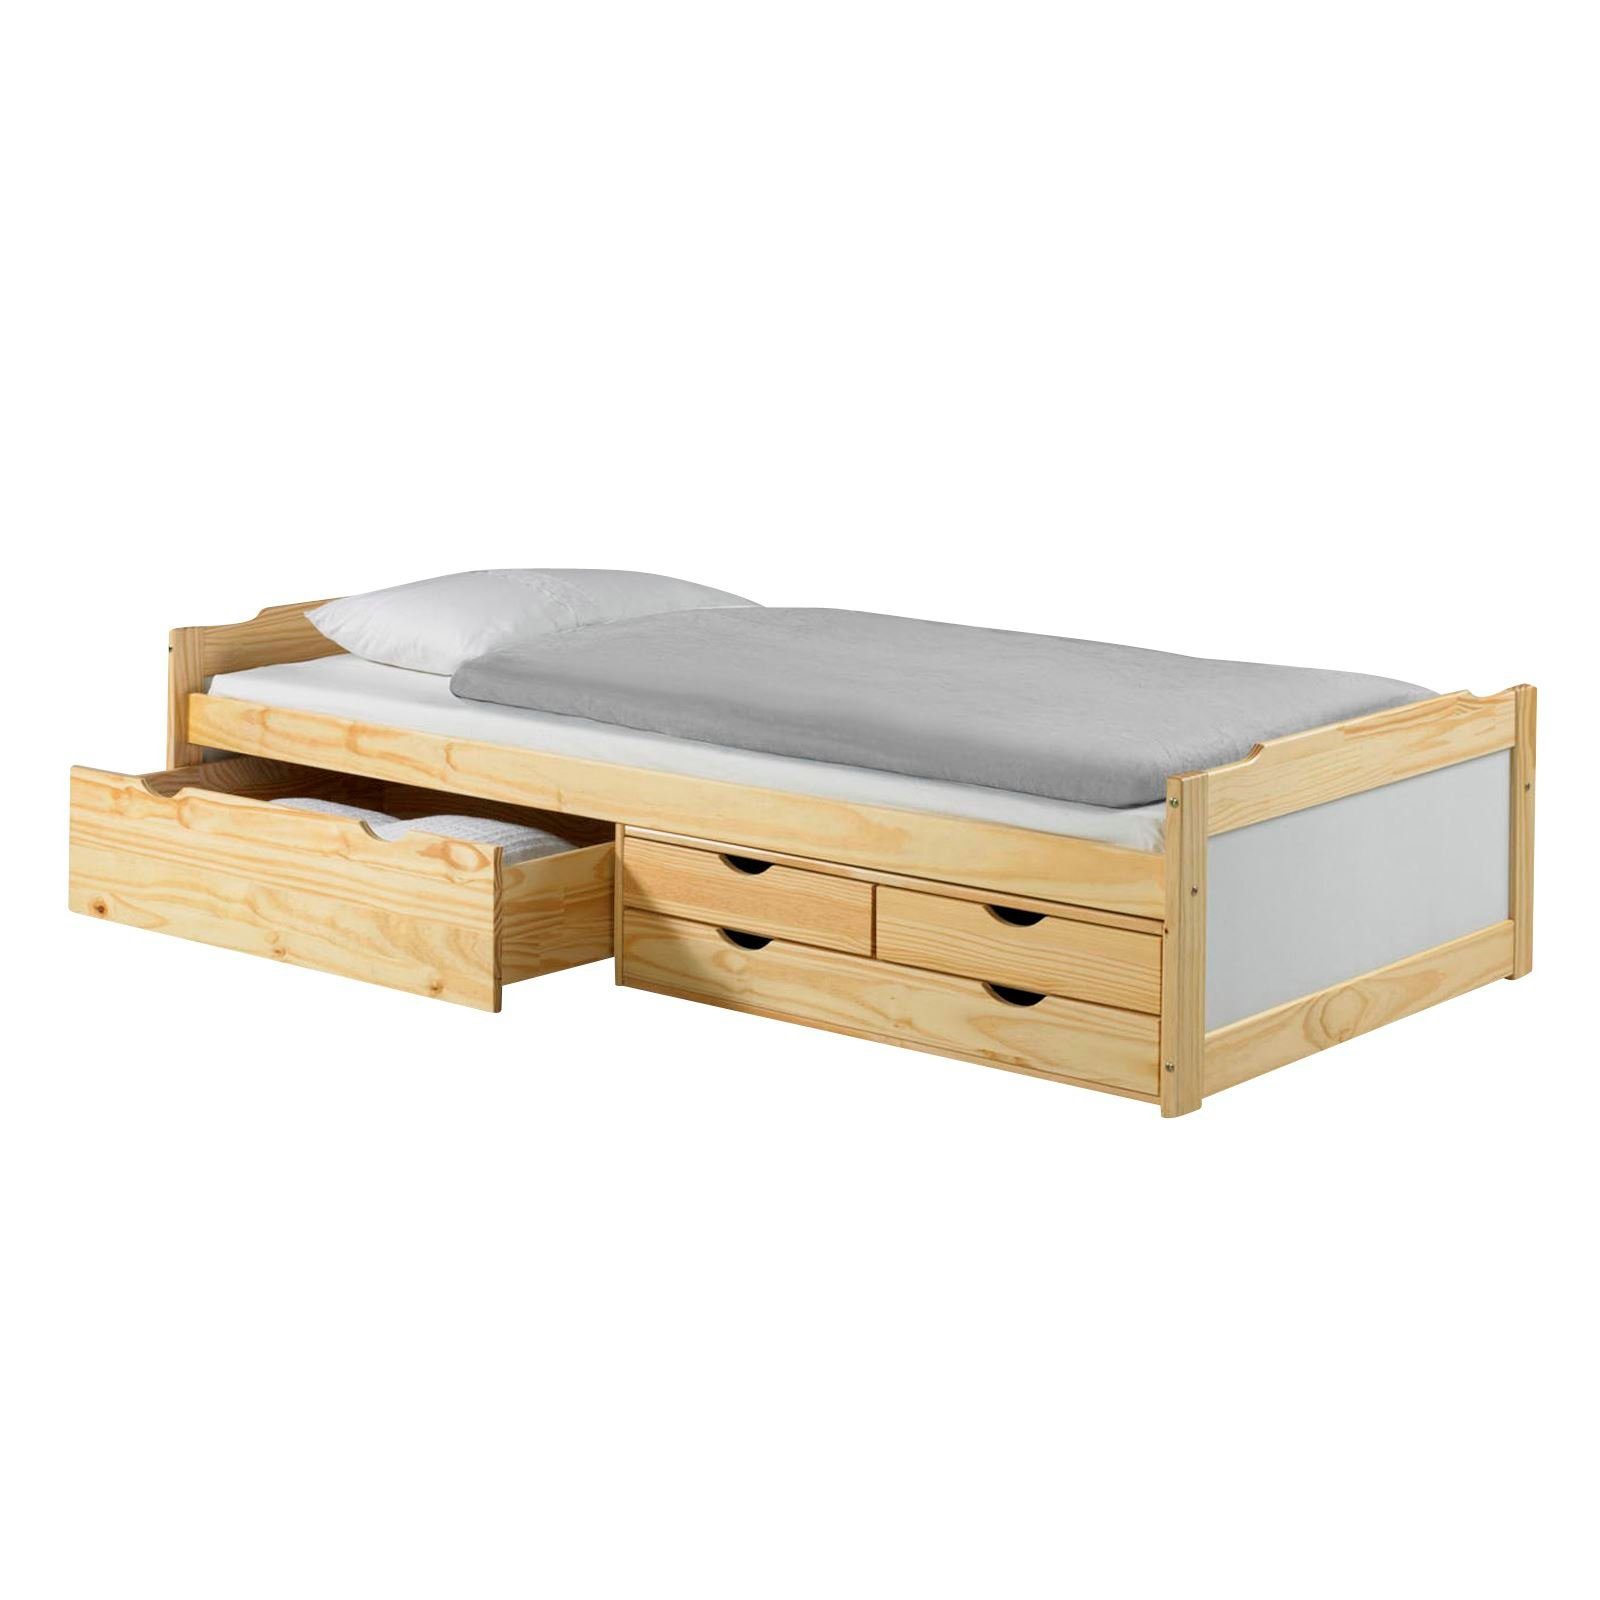 IDIMEX Funktionsbett ANDREA, Bett mit Stauraum, Kiefer massiv, weiss/natur, Bett 90x200 cm, Kinderb natur/weiß